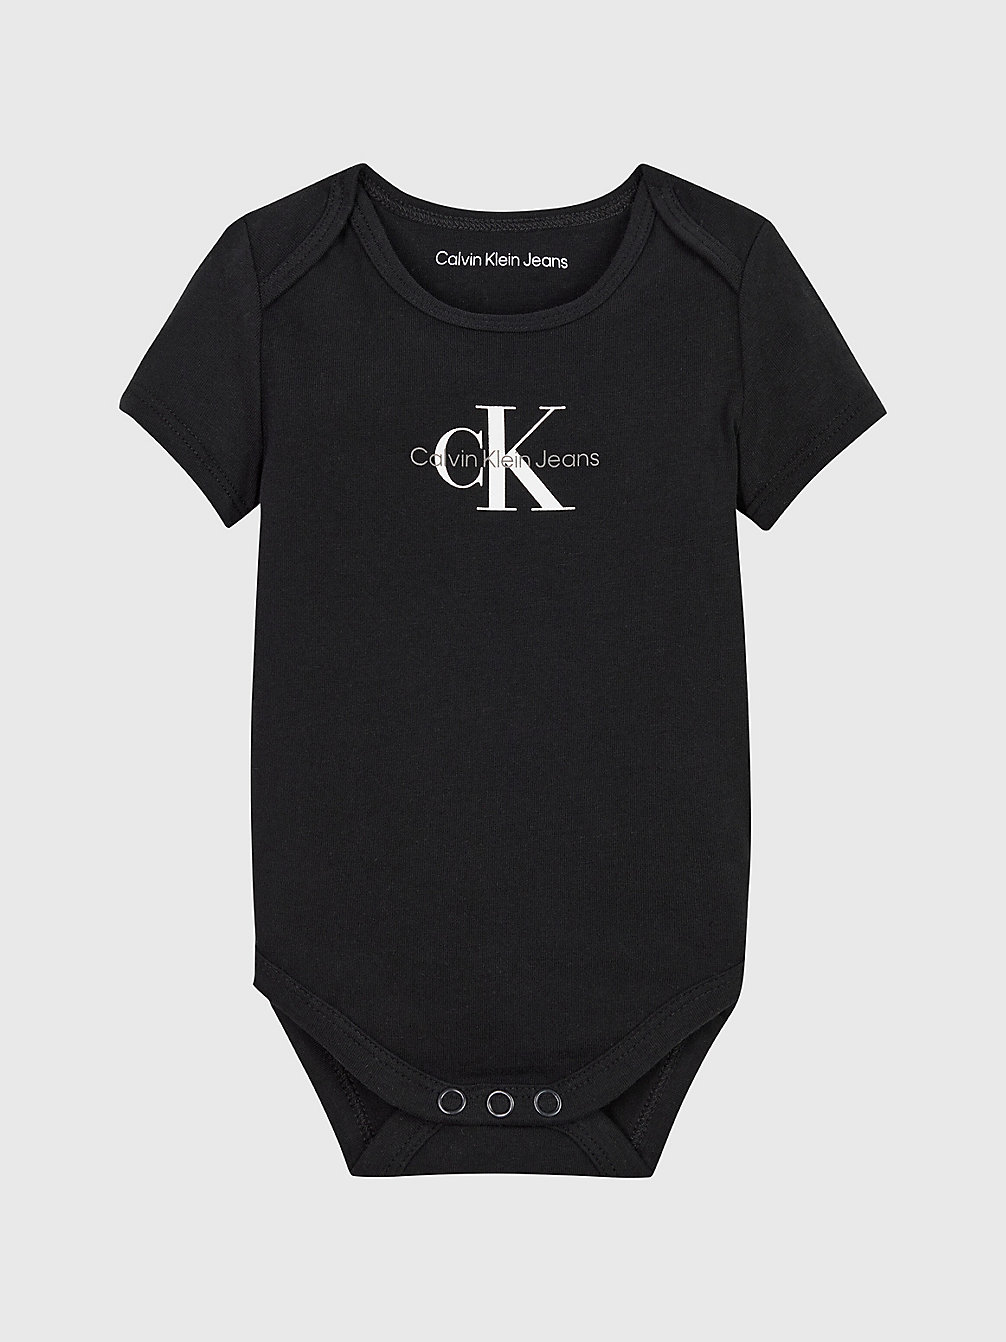 CK BLACK Newborn Logo Bodysuit undefined newborn Calvin Klein